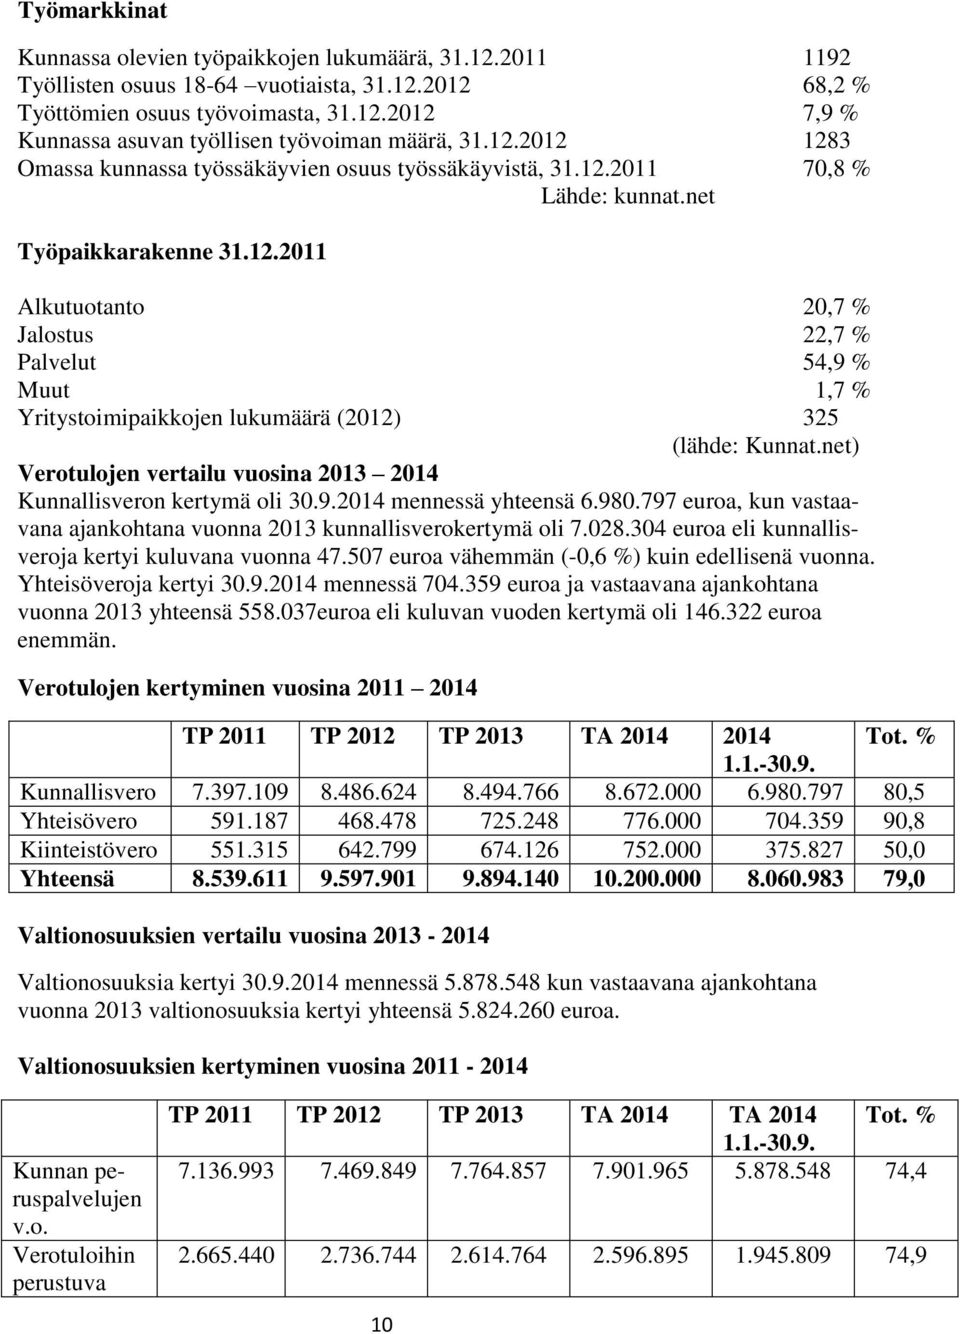 net) Verotulojen vertailu vuosina 2013 2014 Kunnallisveron kertymä oli 30.9.2014 mennessä yhteensä 6.980.797 euroa, kun vastaavana ajankohtana vuonna 2013 kunnallisverokertymä oli 7.028.